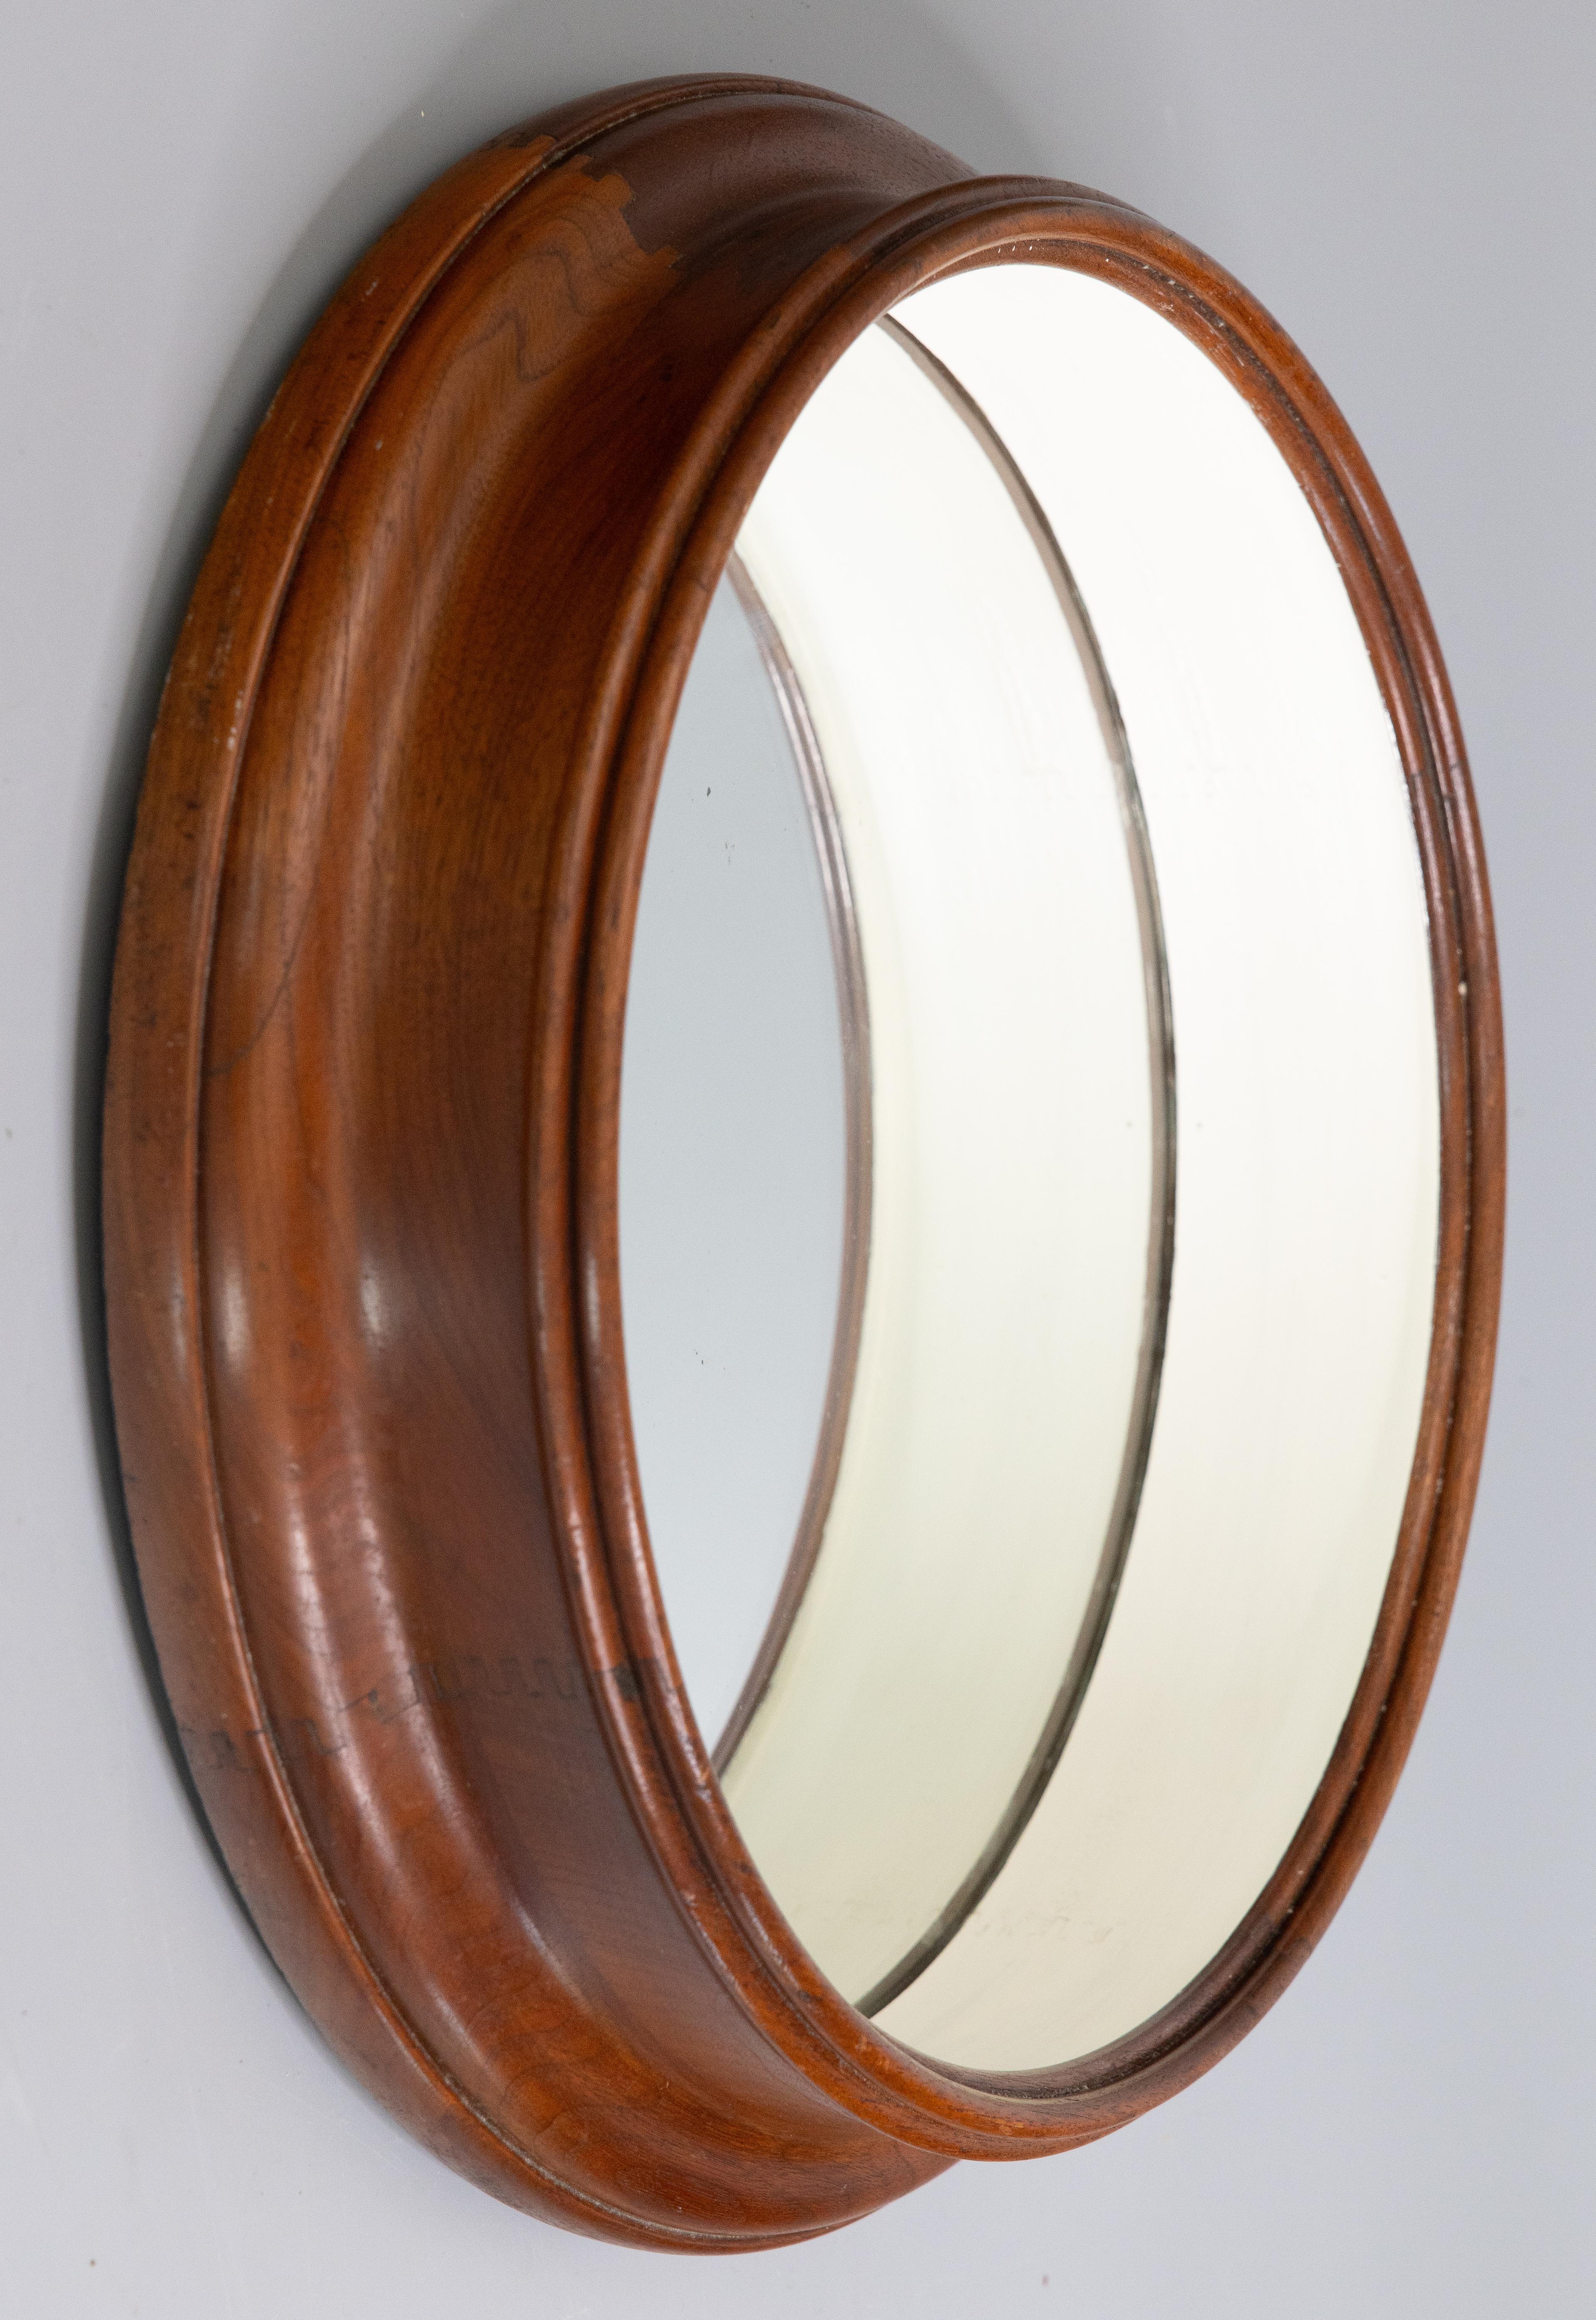 Ein hervorragender antiker runder Bullaugenspiegel aus englischem Nussbaumholz, um 1920. Dieser schöne, große Spiegel mit versenktem Spiegelglas ist von einem Nussbaumrahmen mit schöner Patina umgeben und passt in jeden Raum.

ABMESSUNGEN
17,5ʺB ×